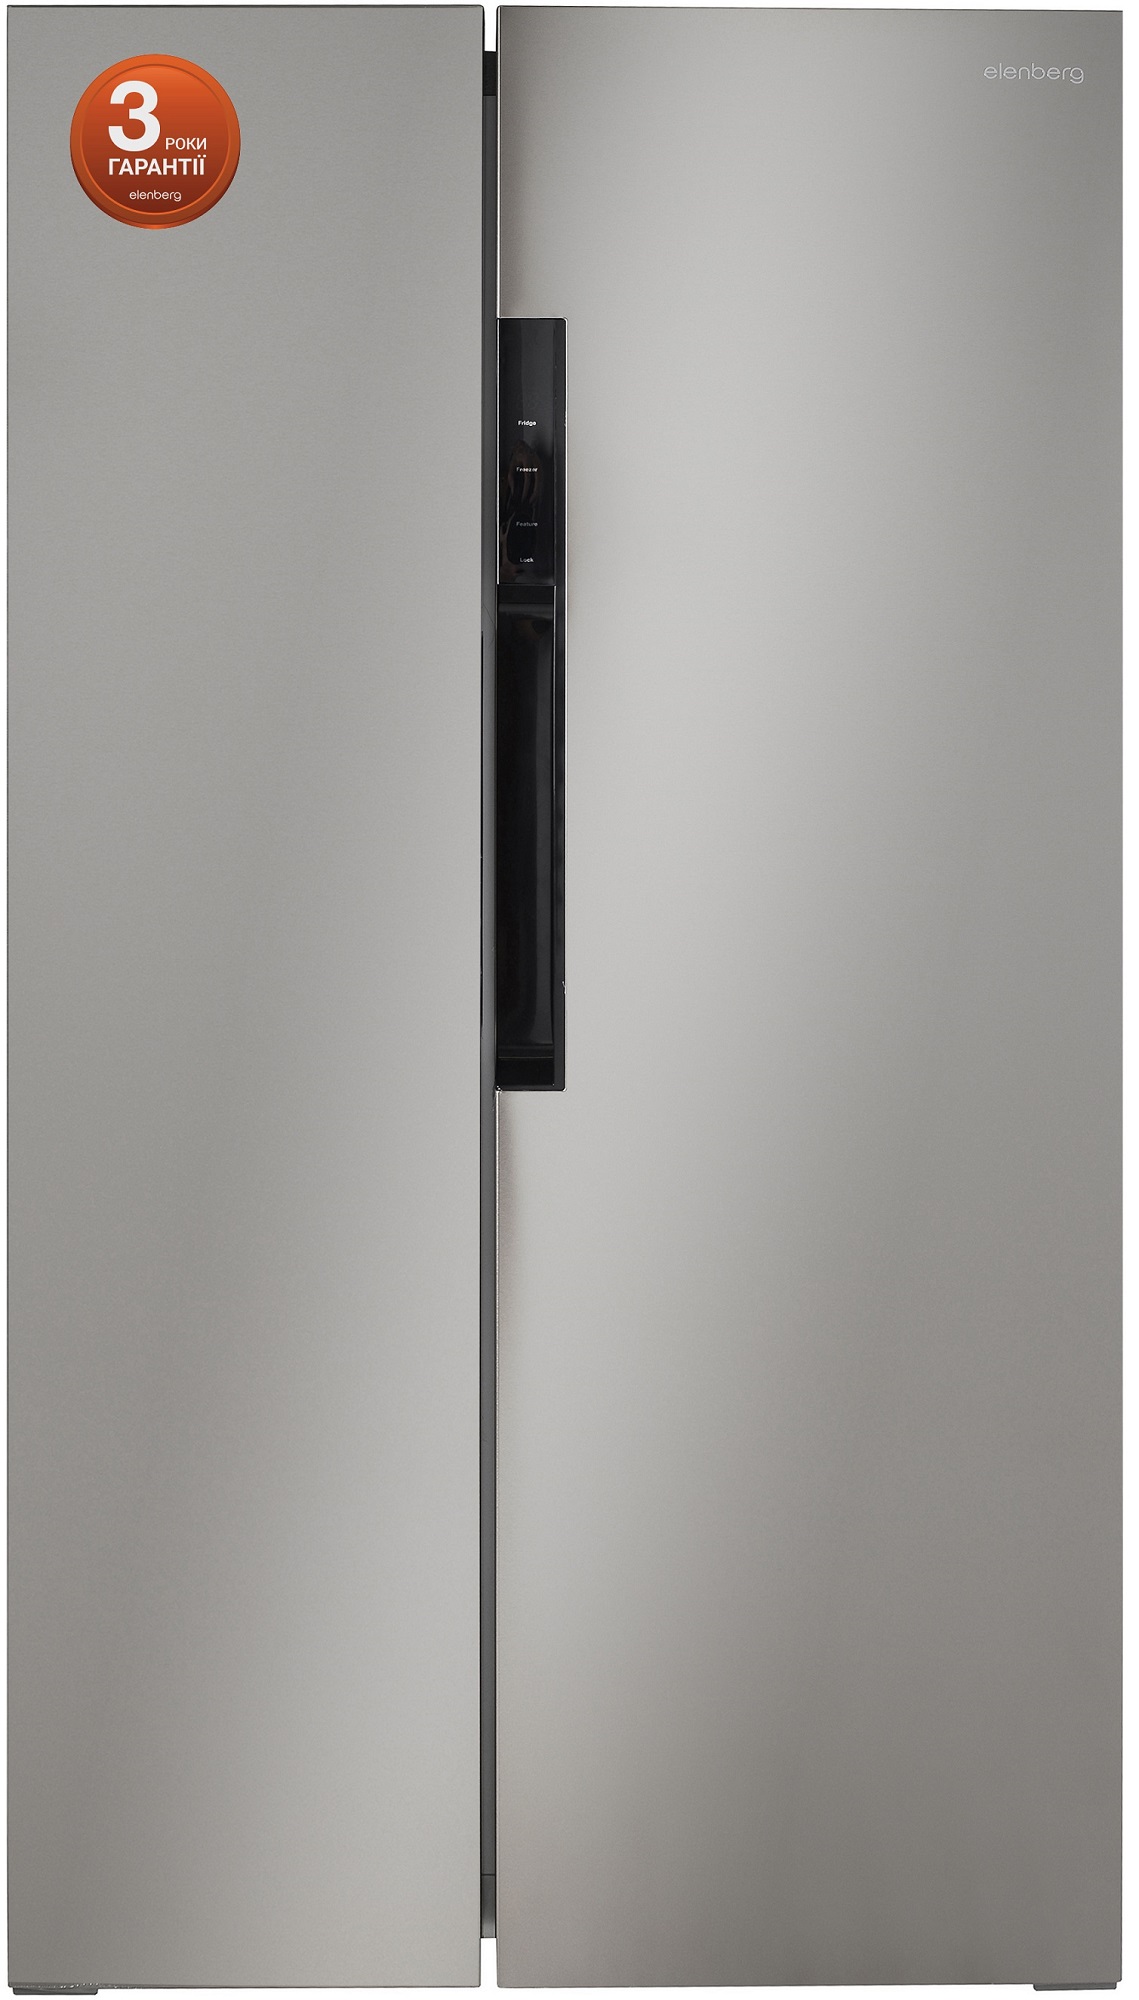 Холодильник Elenberg SBS 496 S отзывы - изображения 5